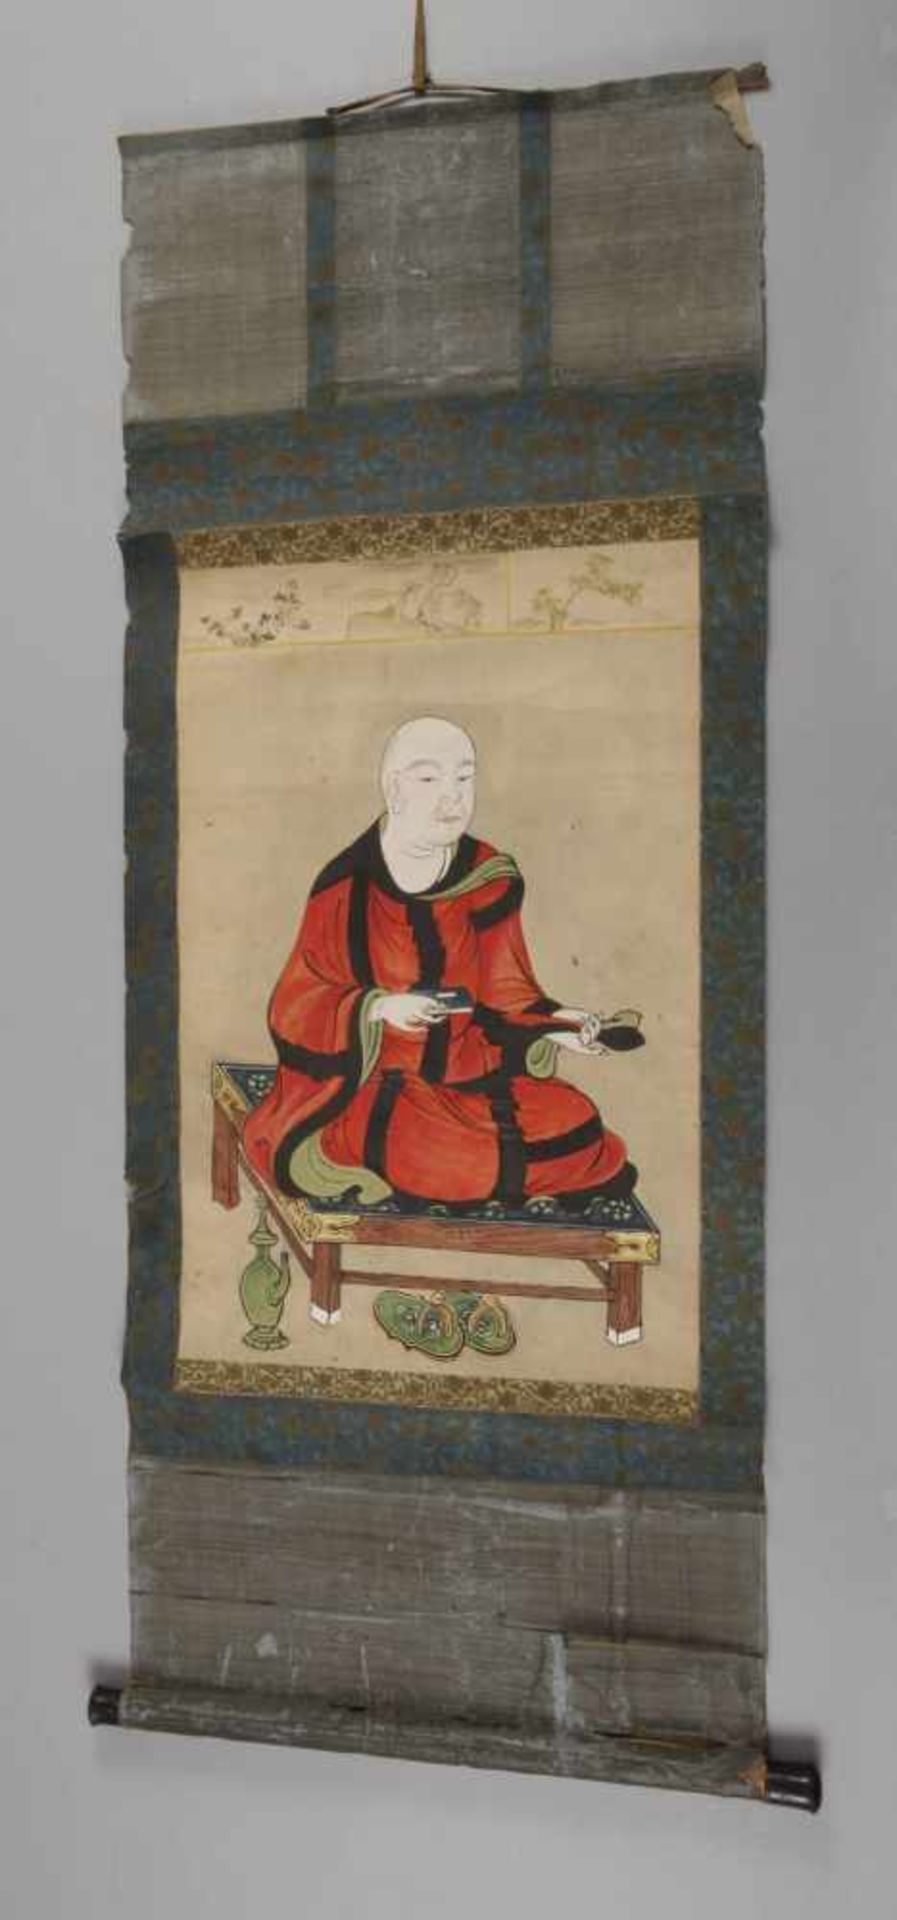 Zwei RollbilderJapan, 19. Jh., Mischtechnik auf Papier, Darstellung zweier sitzender Zen-Mönche, - Bild 2 aus 3